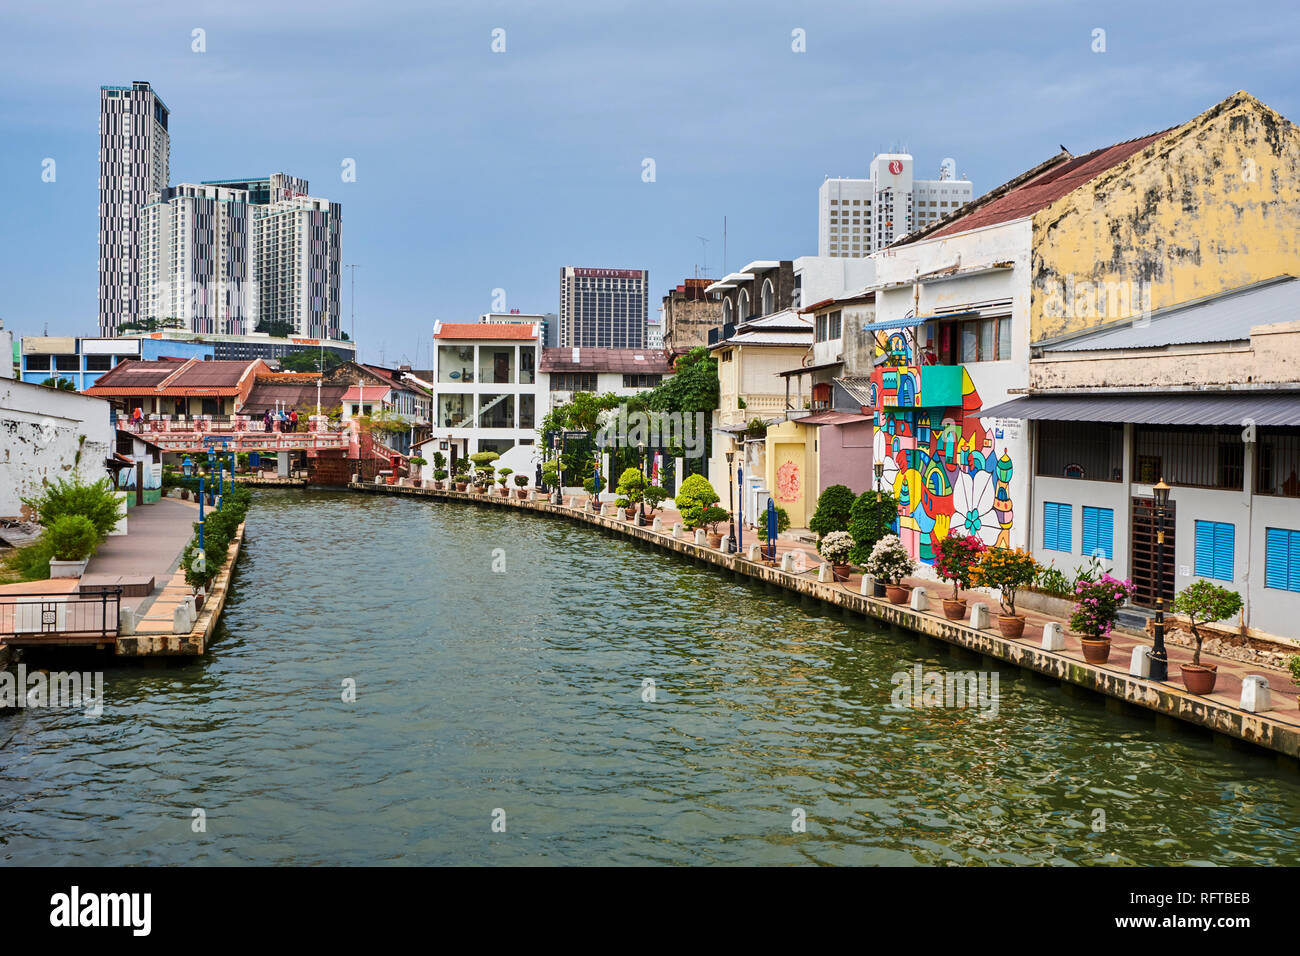 La peinture murale et le canal, Malacca, Site du patrimoine mondial de l'UNESCO, de l'état de Malacca, Malaisie, Asie du Sud, Asie Banque D'Images